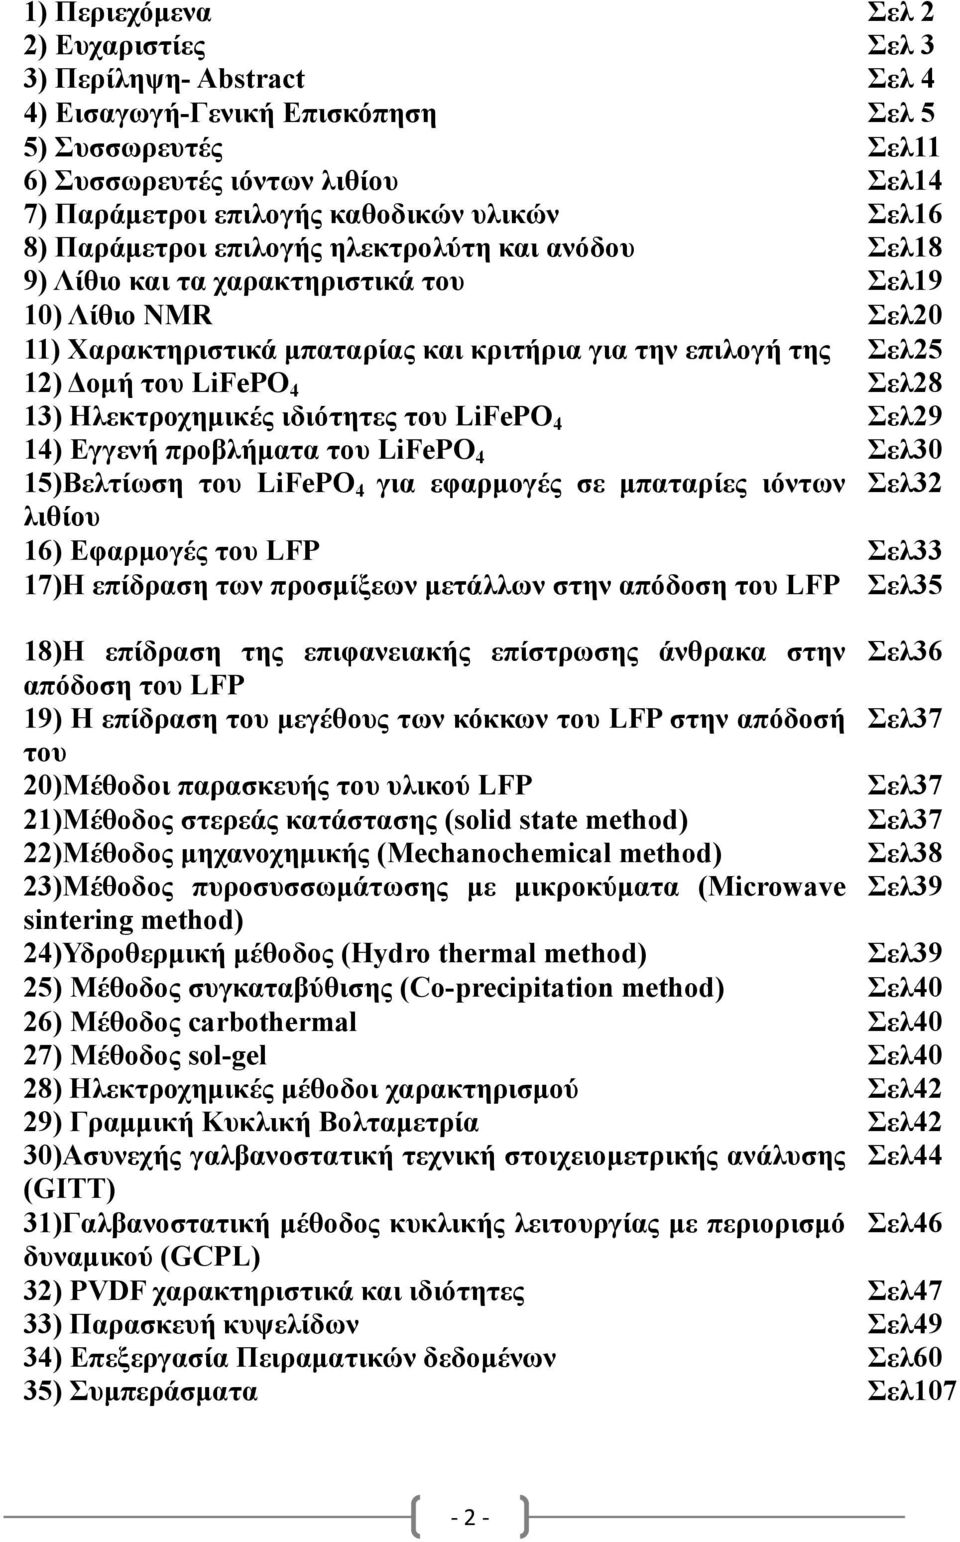 οµή του LiFePO 4 Σελ28 13) Ηλεκτροχηµικές ιδιότητες του LiFePO 4 Σελ29 14) Eγγενή προβλήµατα του LiFePO 4 Σελ30 15)Βελτίωση του LiFePO 4 για εφαρµογές σε µπαταρίες ιόντων Σελ32 λιθίου 16) Εφαρµογές